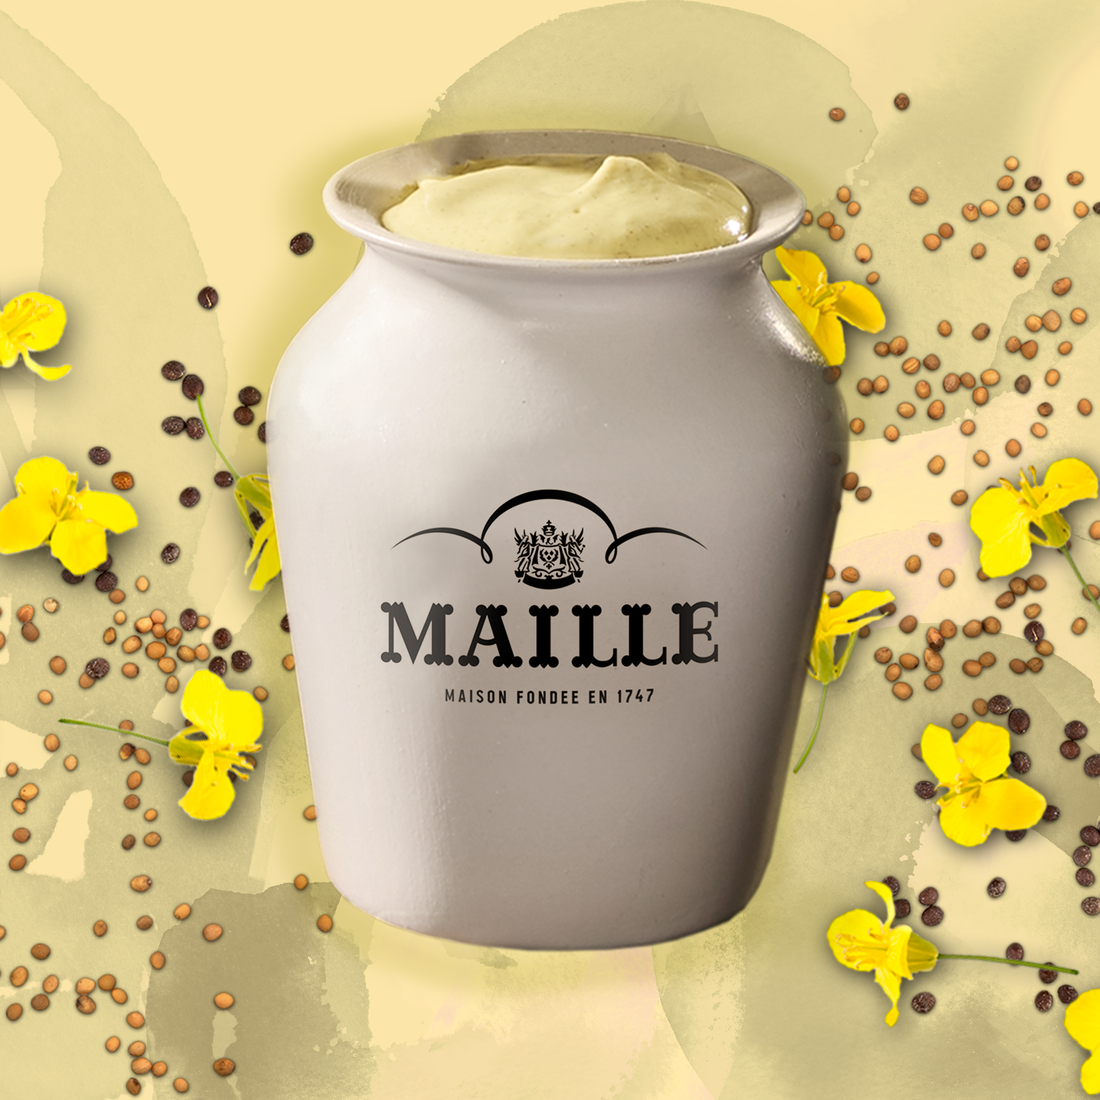 Maille - L'originale au vin blanc servie a la pompe, new visual